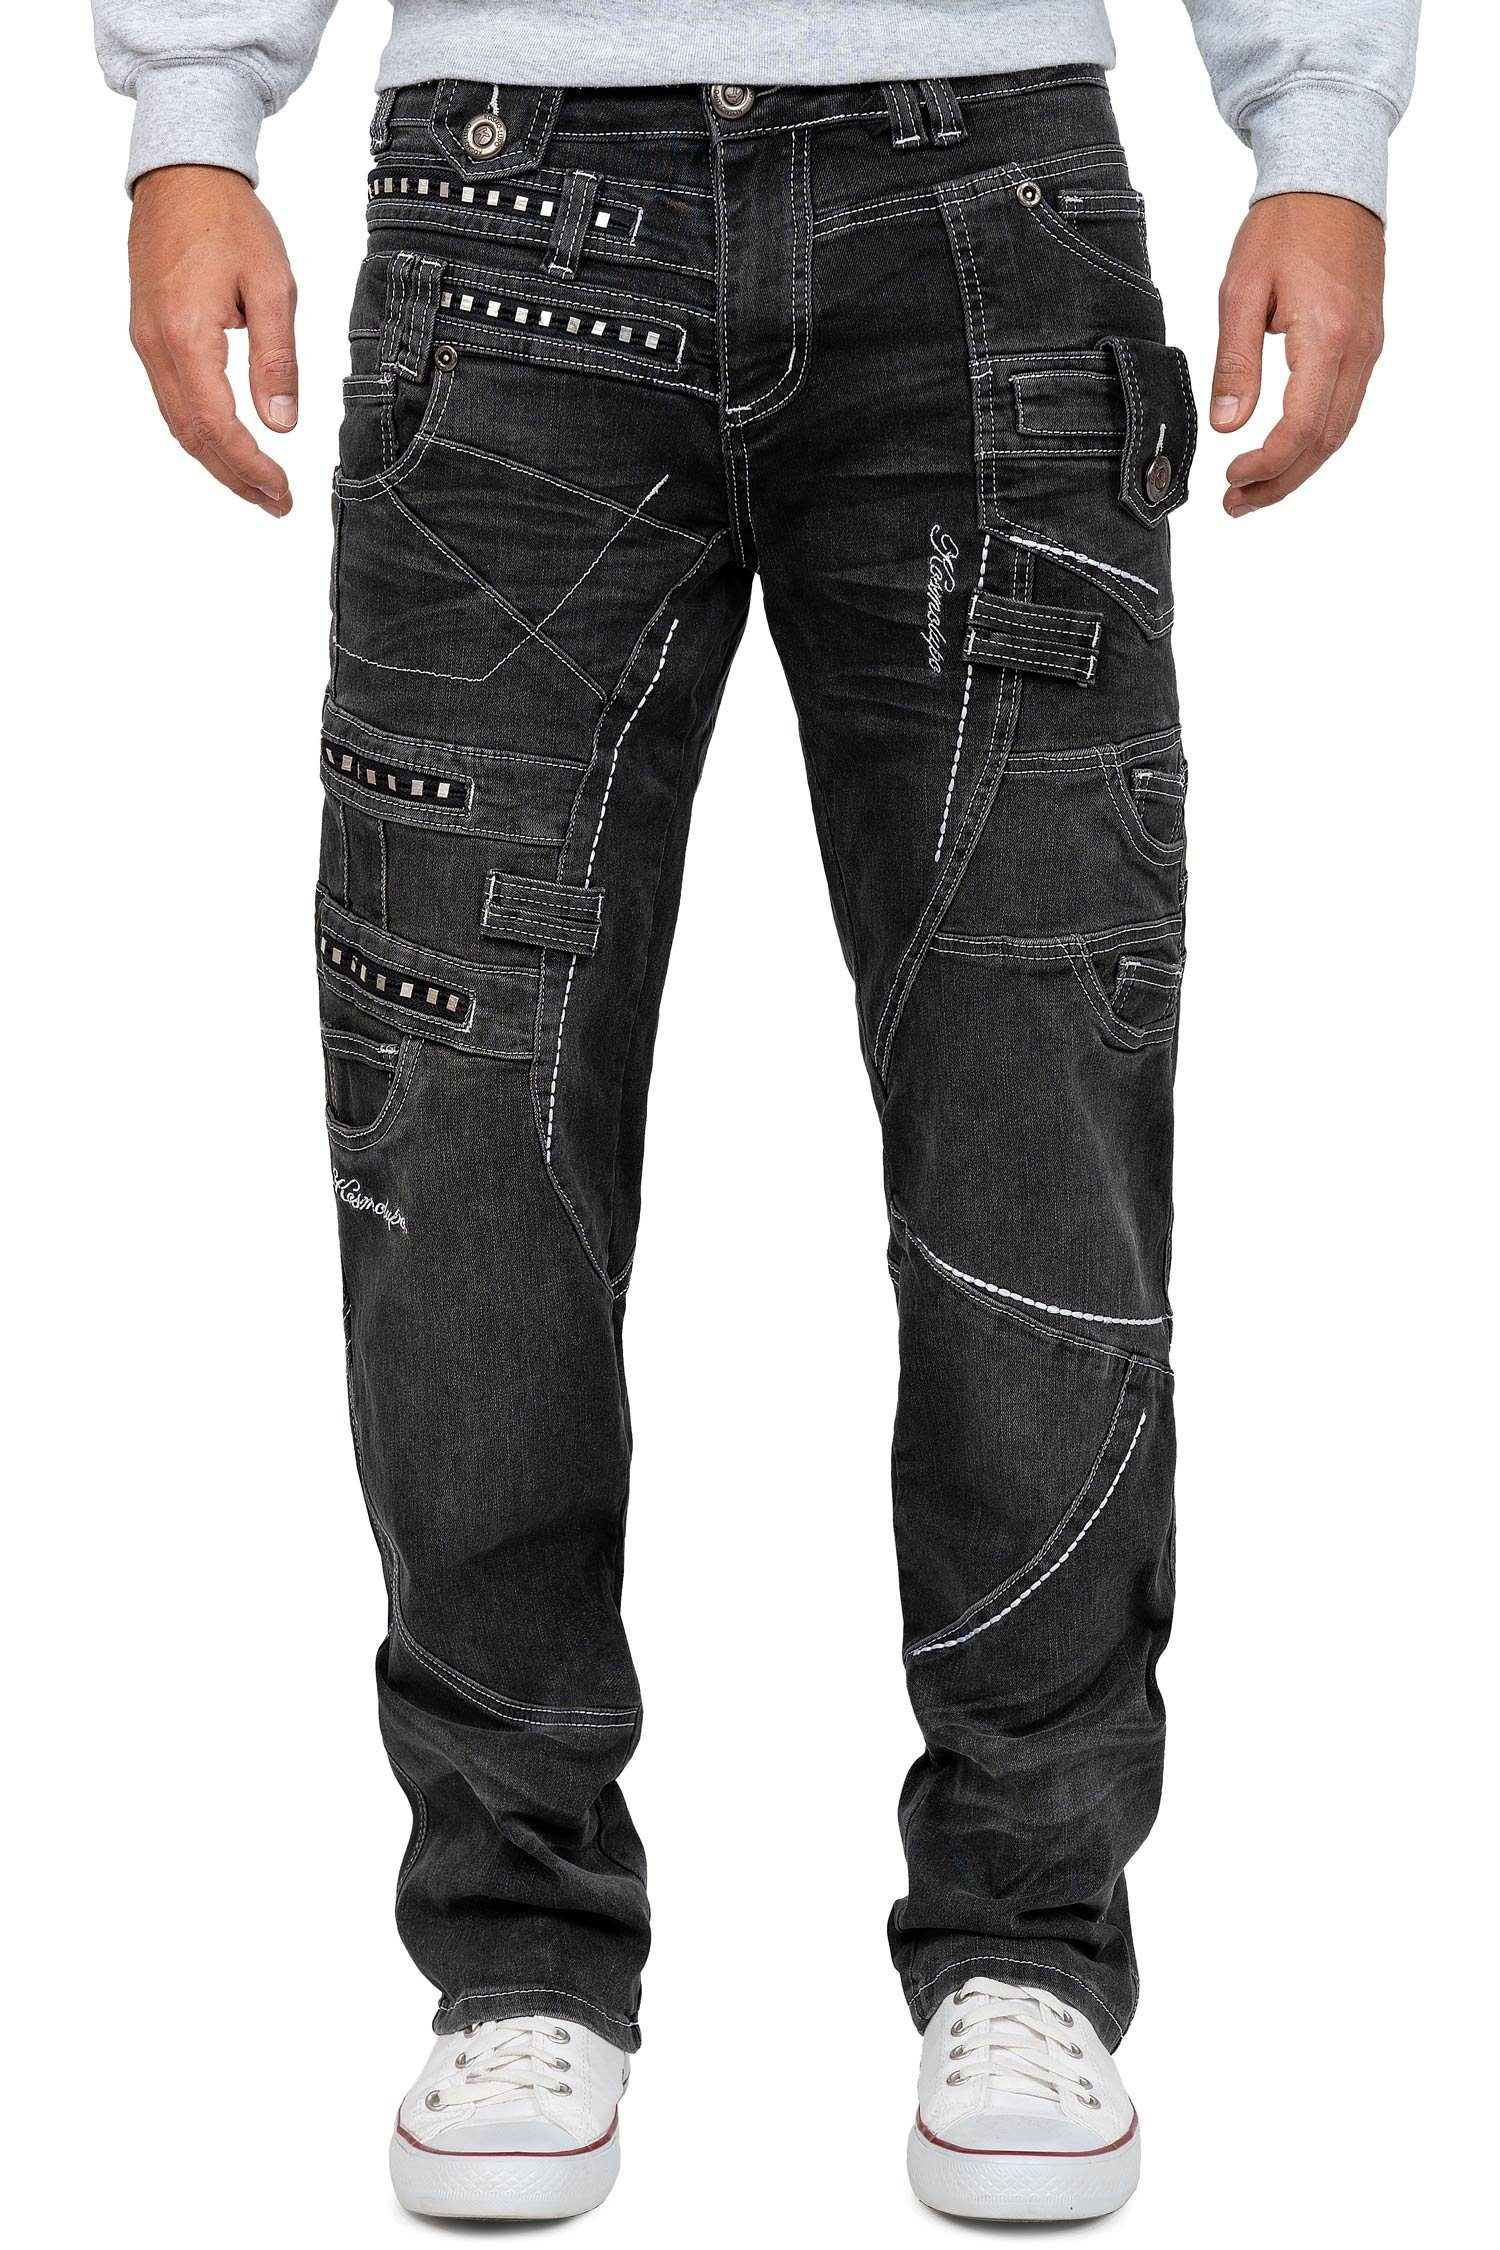 Kosmo Lupo 5-Pocket-Jeans Auffällige Herren Hose BA-KM001 mit Verzierungen und Nieten grau